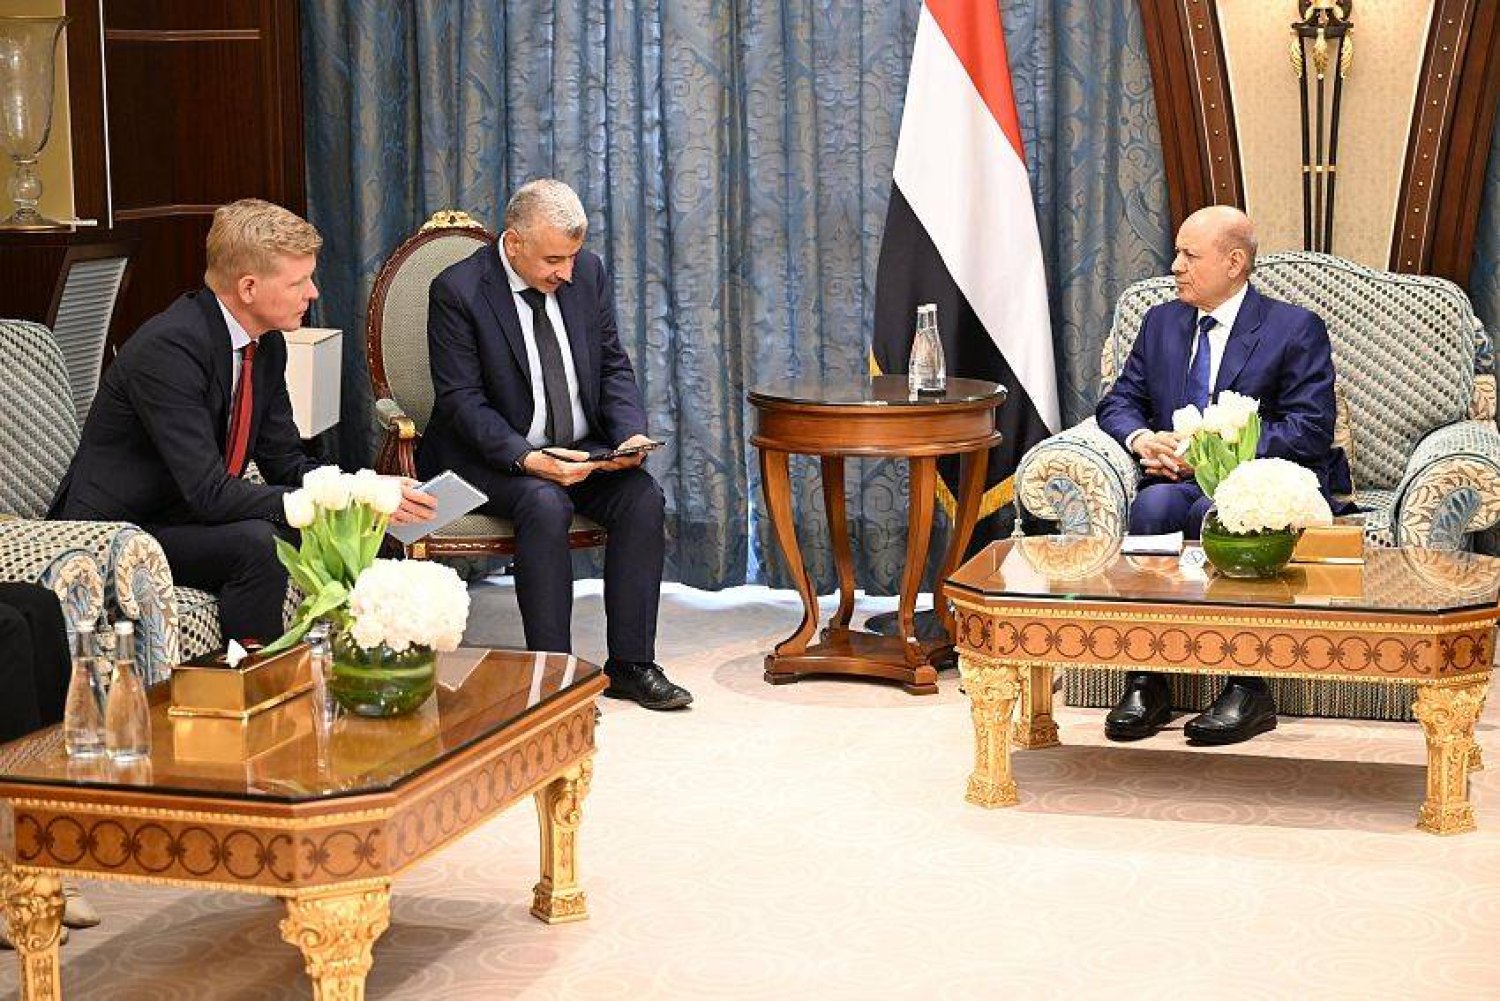 رئيس مجلس القيادة الرئاسي اليمني استقبل في الرياض المبعوث الأممي (سبأ)